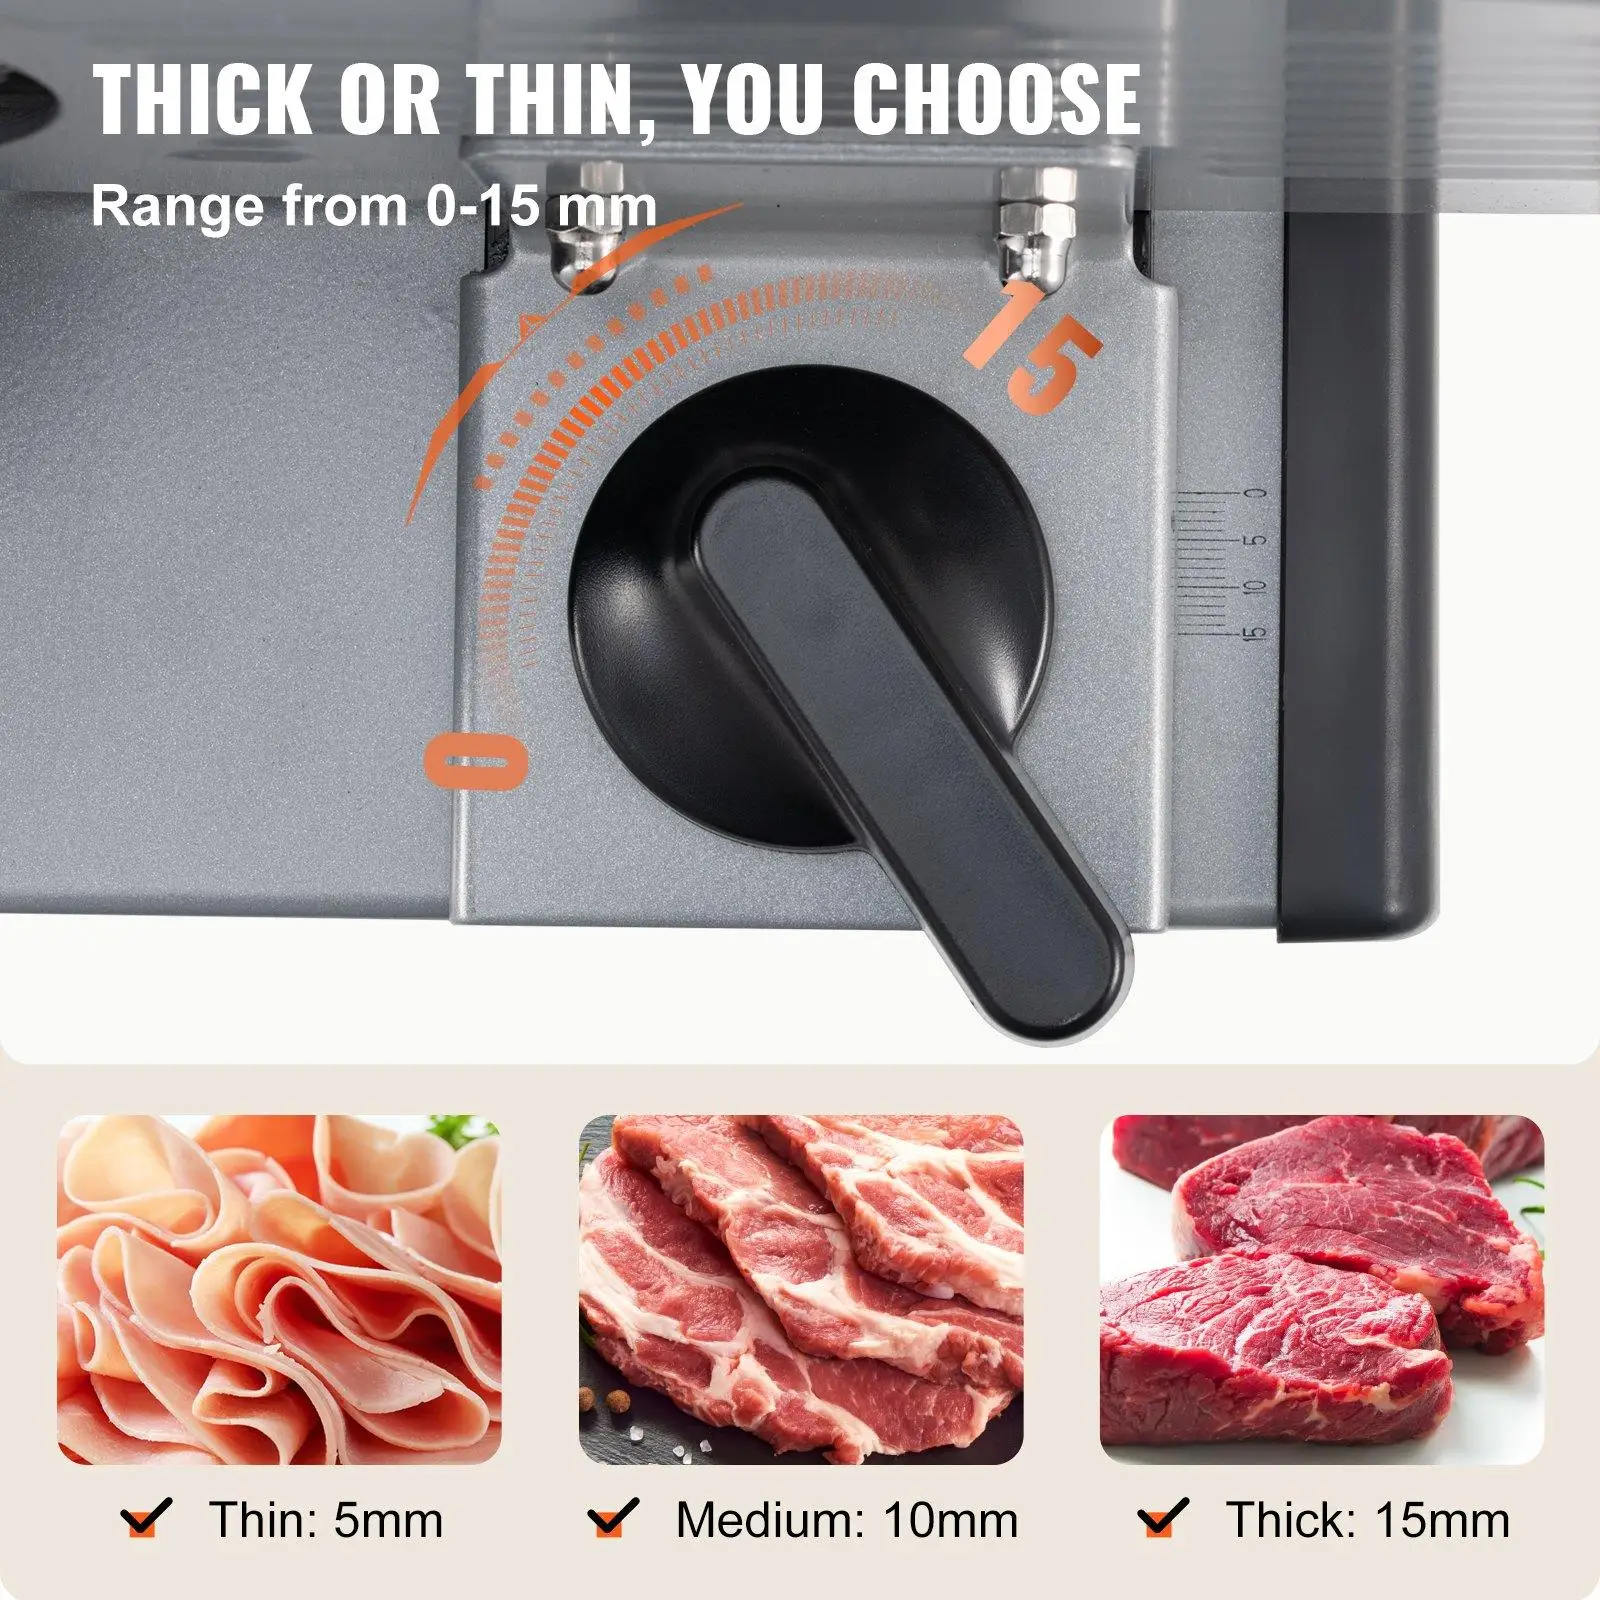 VEVOR electric meat slicer review